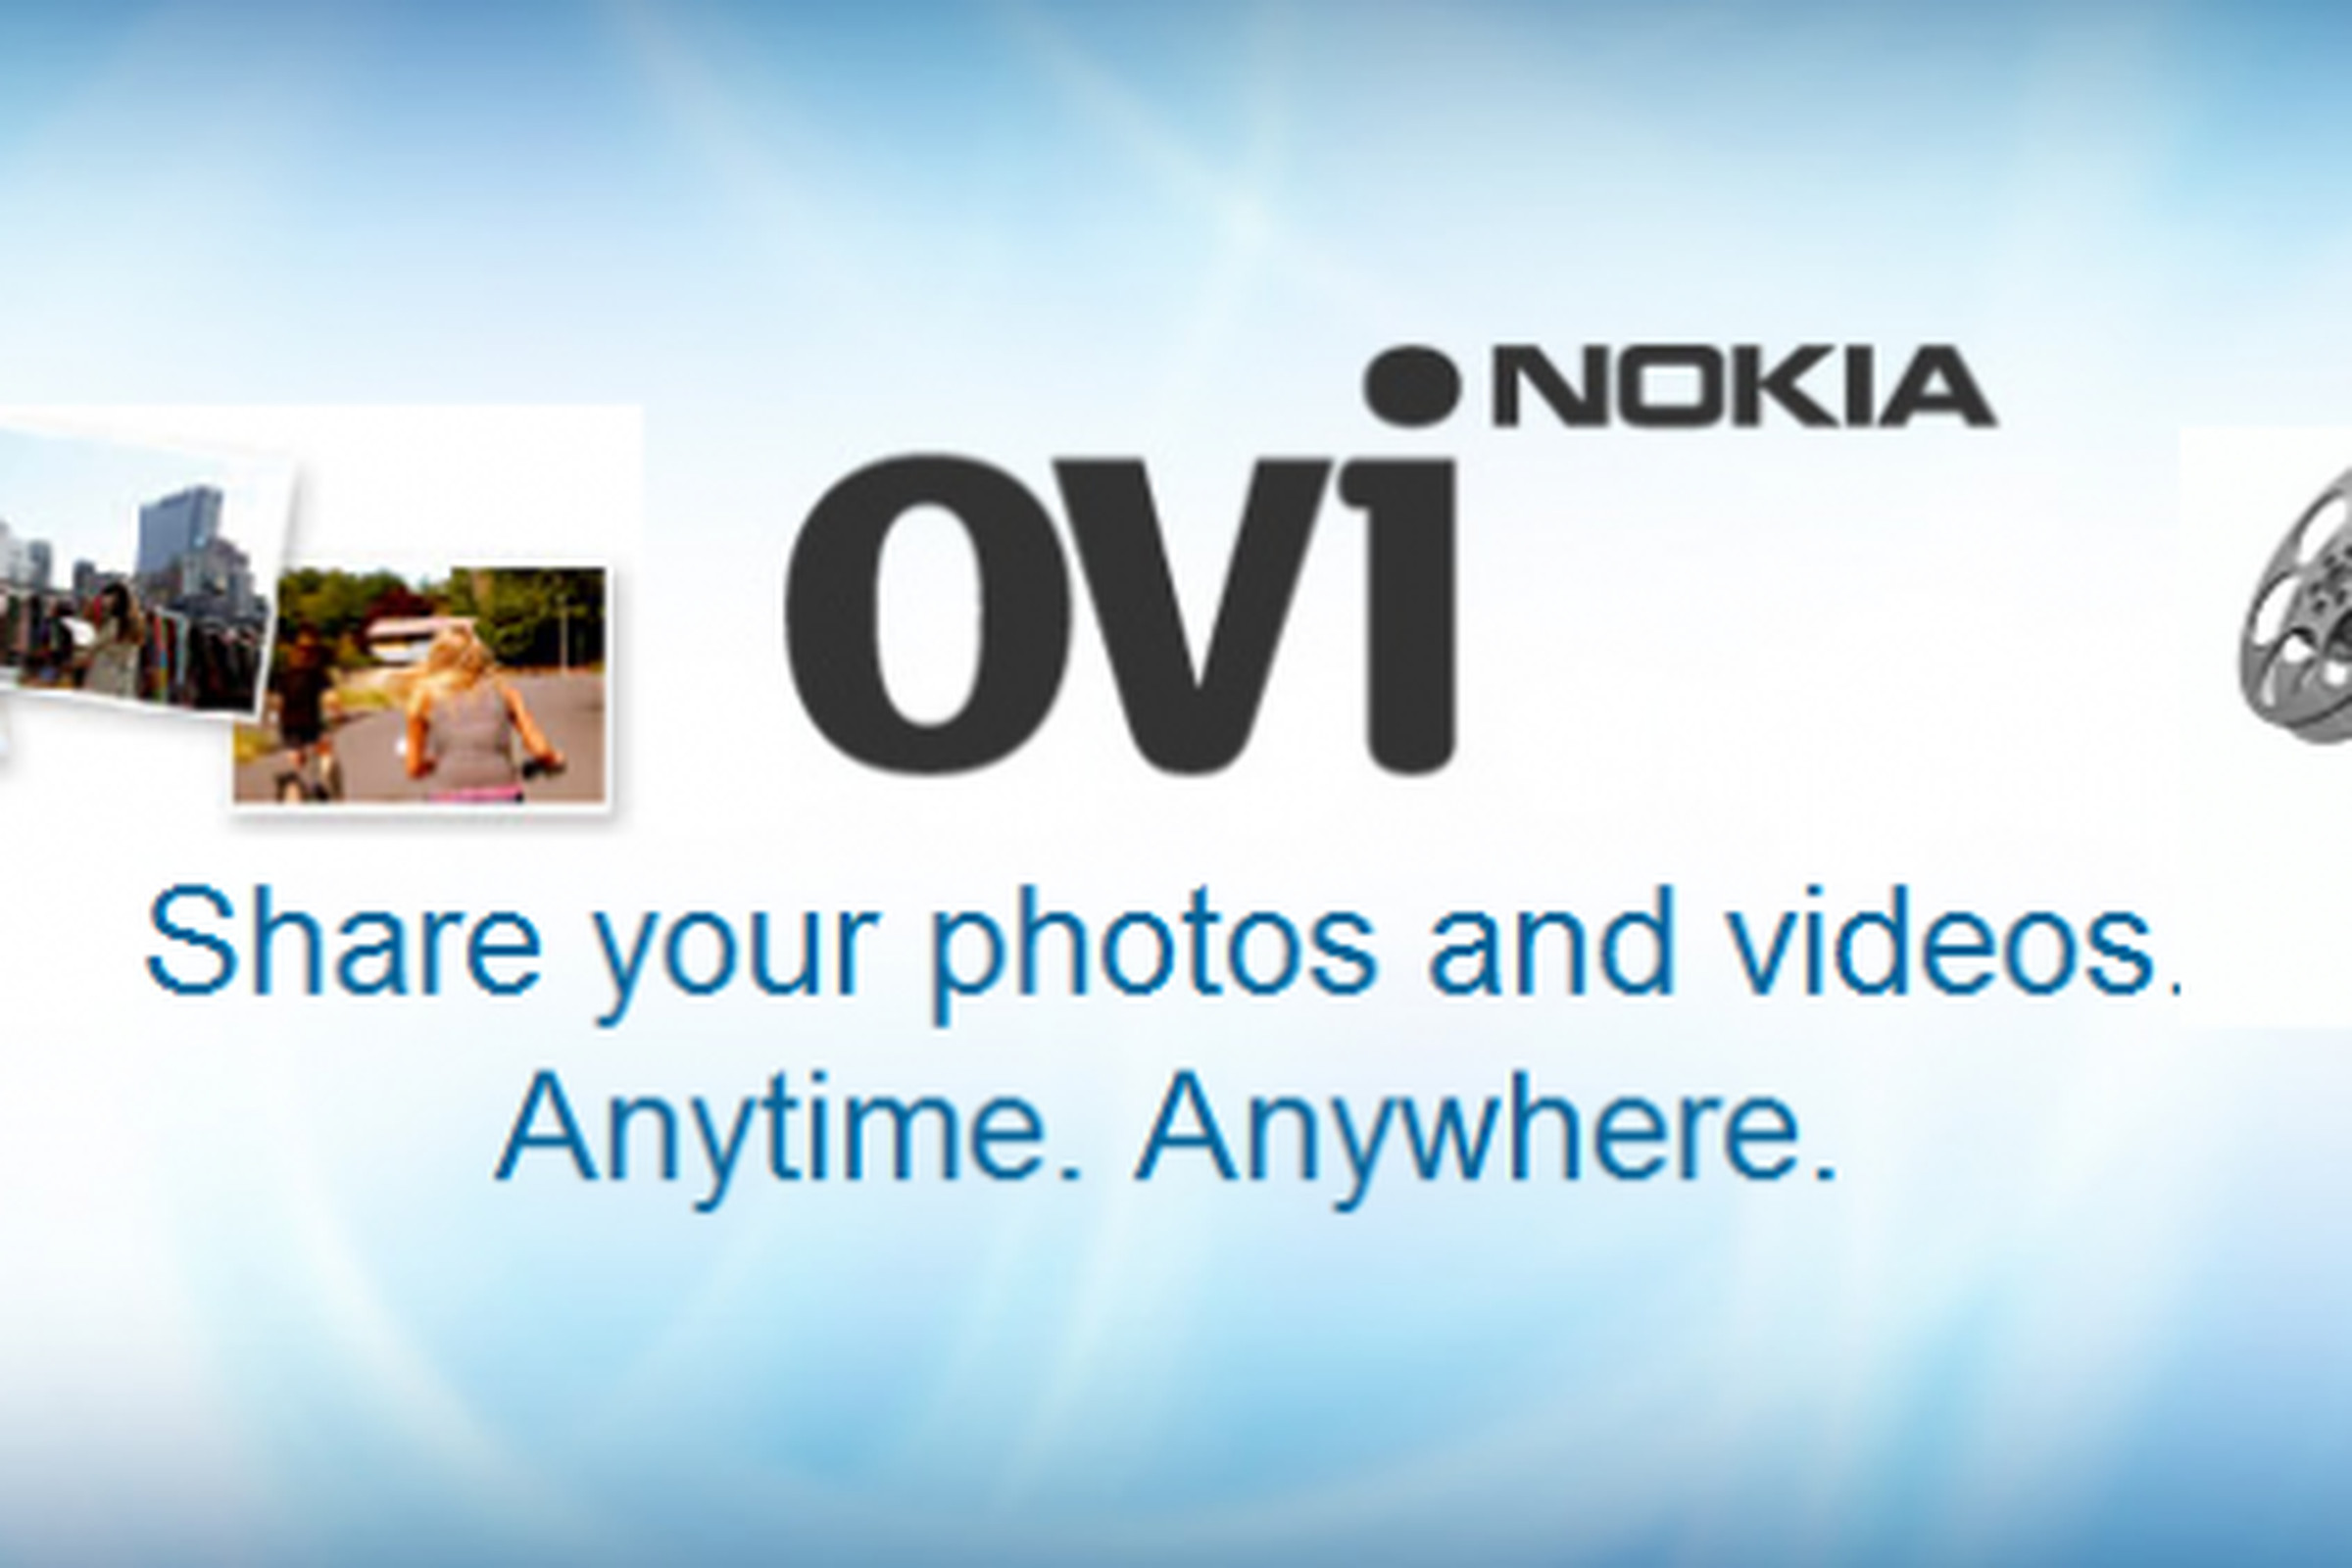 Ovi Share Nokia